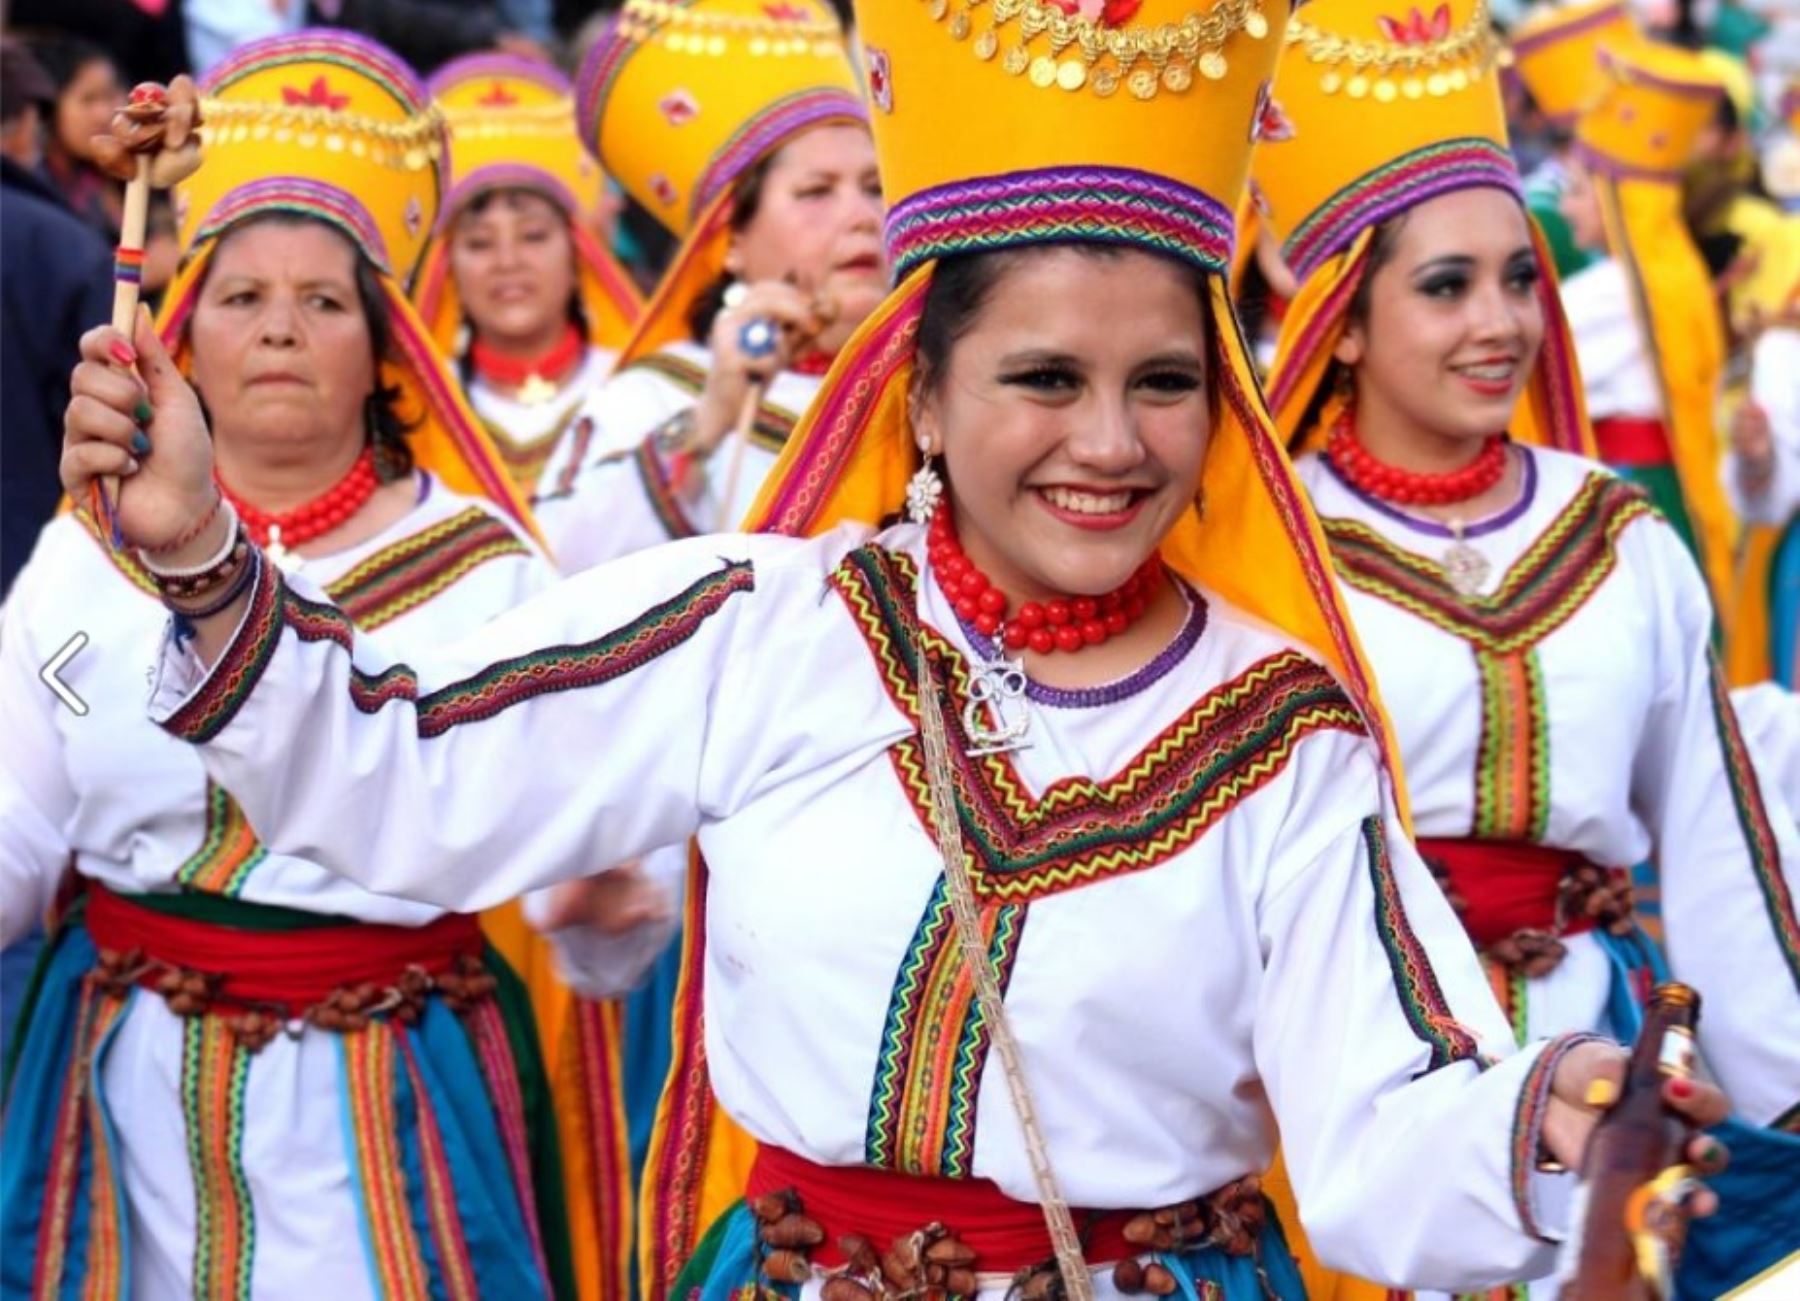 La Municipalidad Provincial presentará oficialmente, el próximo miércoles 18 de enero, el programa de actividades del Carnaval 2017, así como el afiche y toda la información concerniente a esta tradicional y popular festividad, que consagra a Cajamarca como la capital del carnaval peruano.